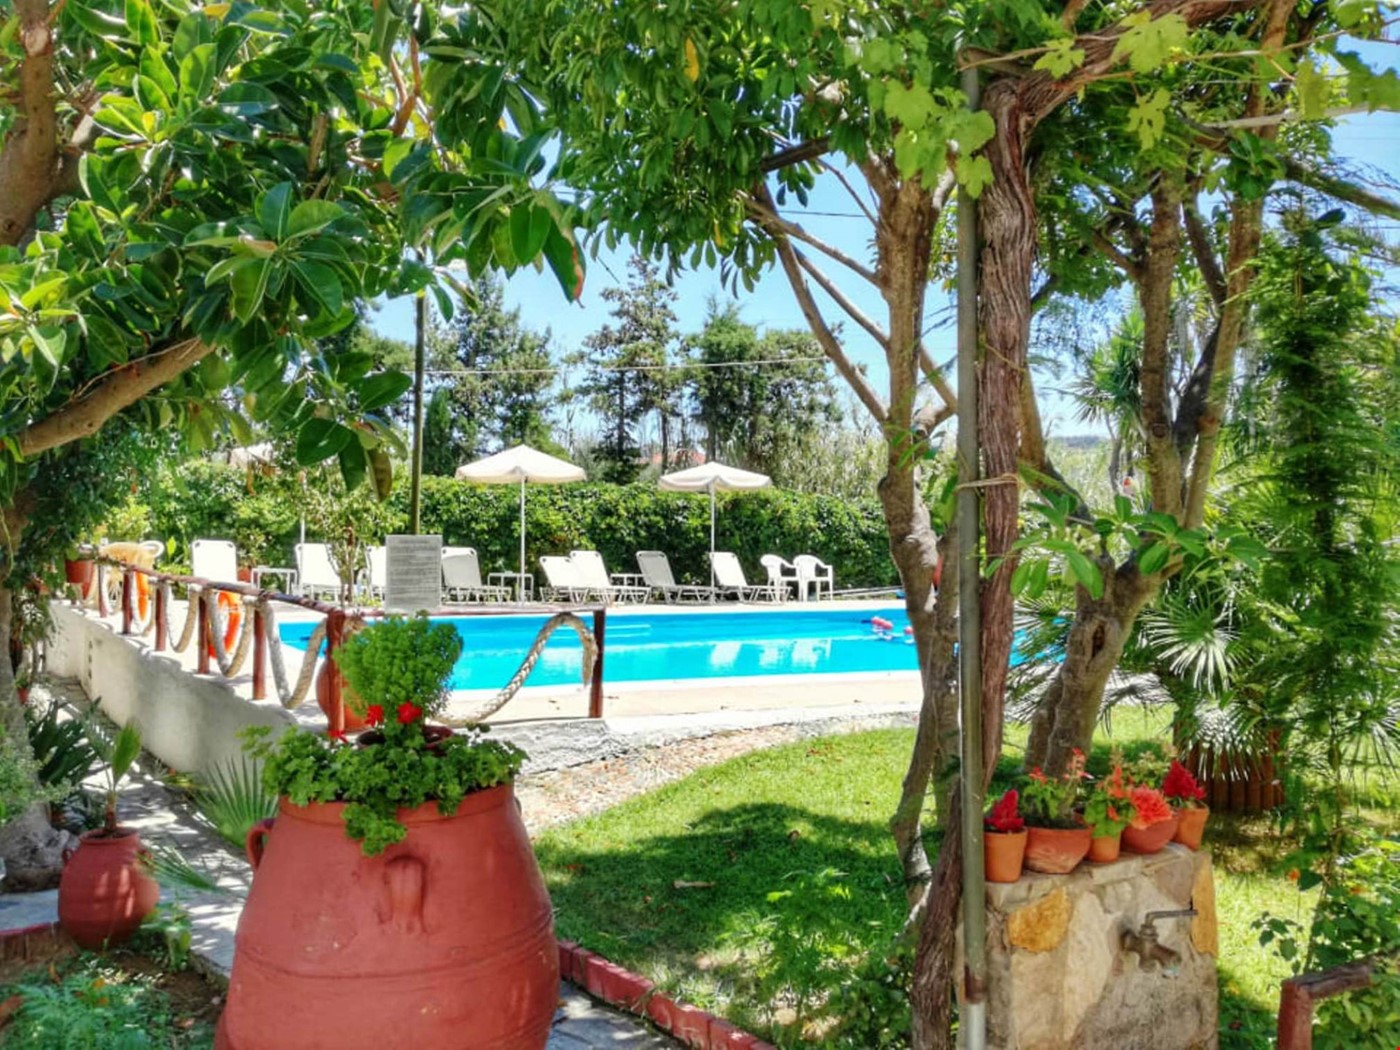 Hotel Pirgos Psilonerou Greece nomad remote 31ded38f-0f29-4ed0-a4f6-86c4305525f5_Garden Pool 9.jpg